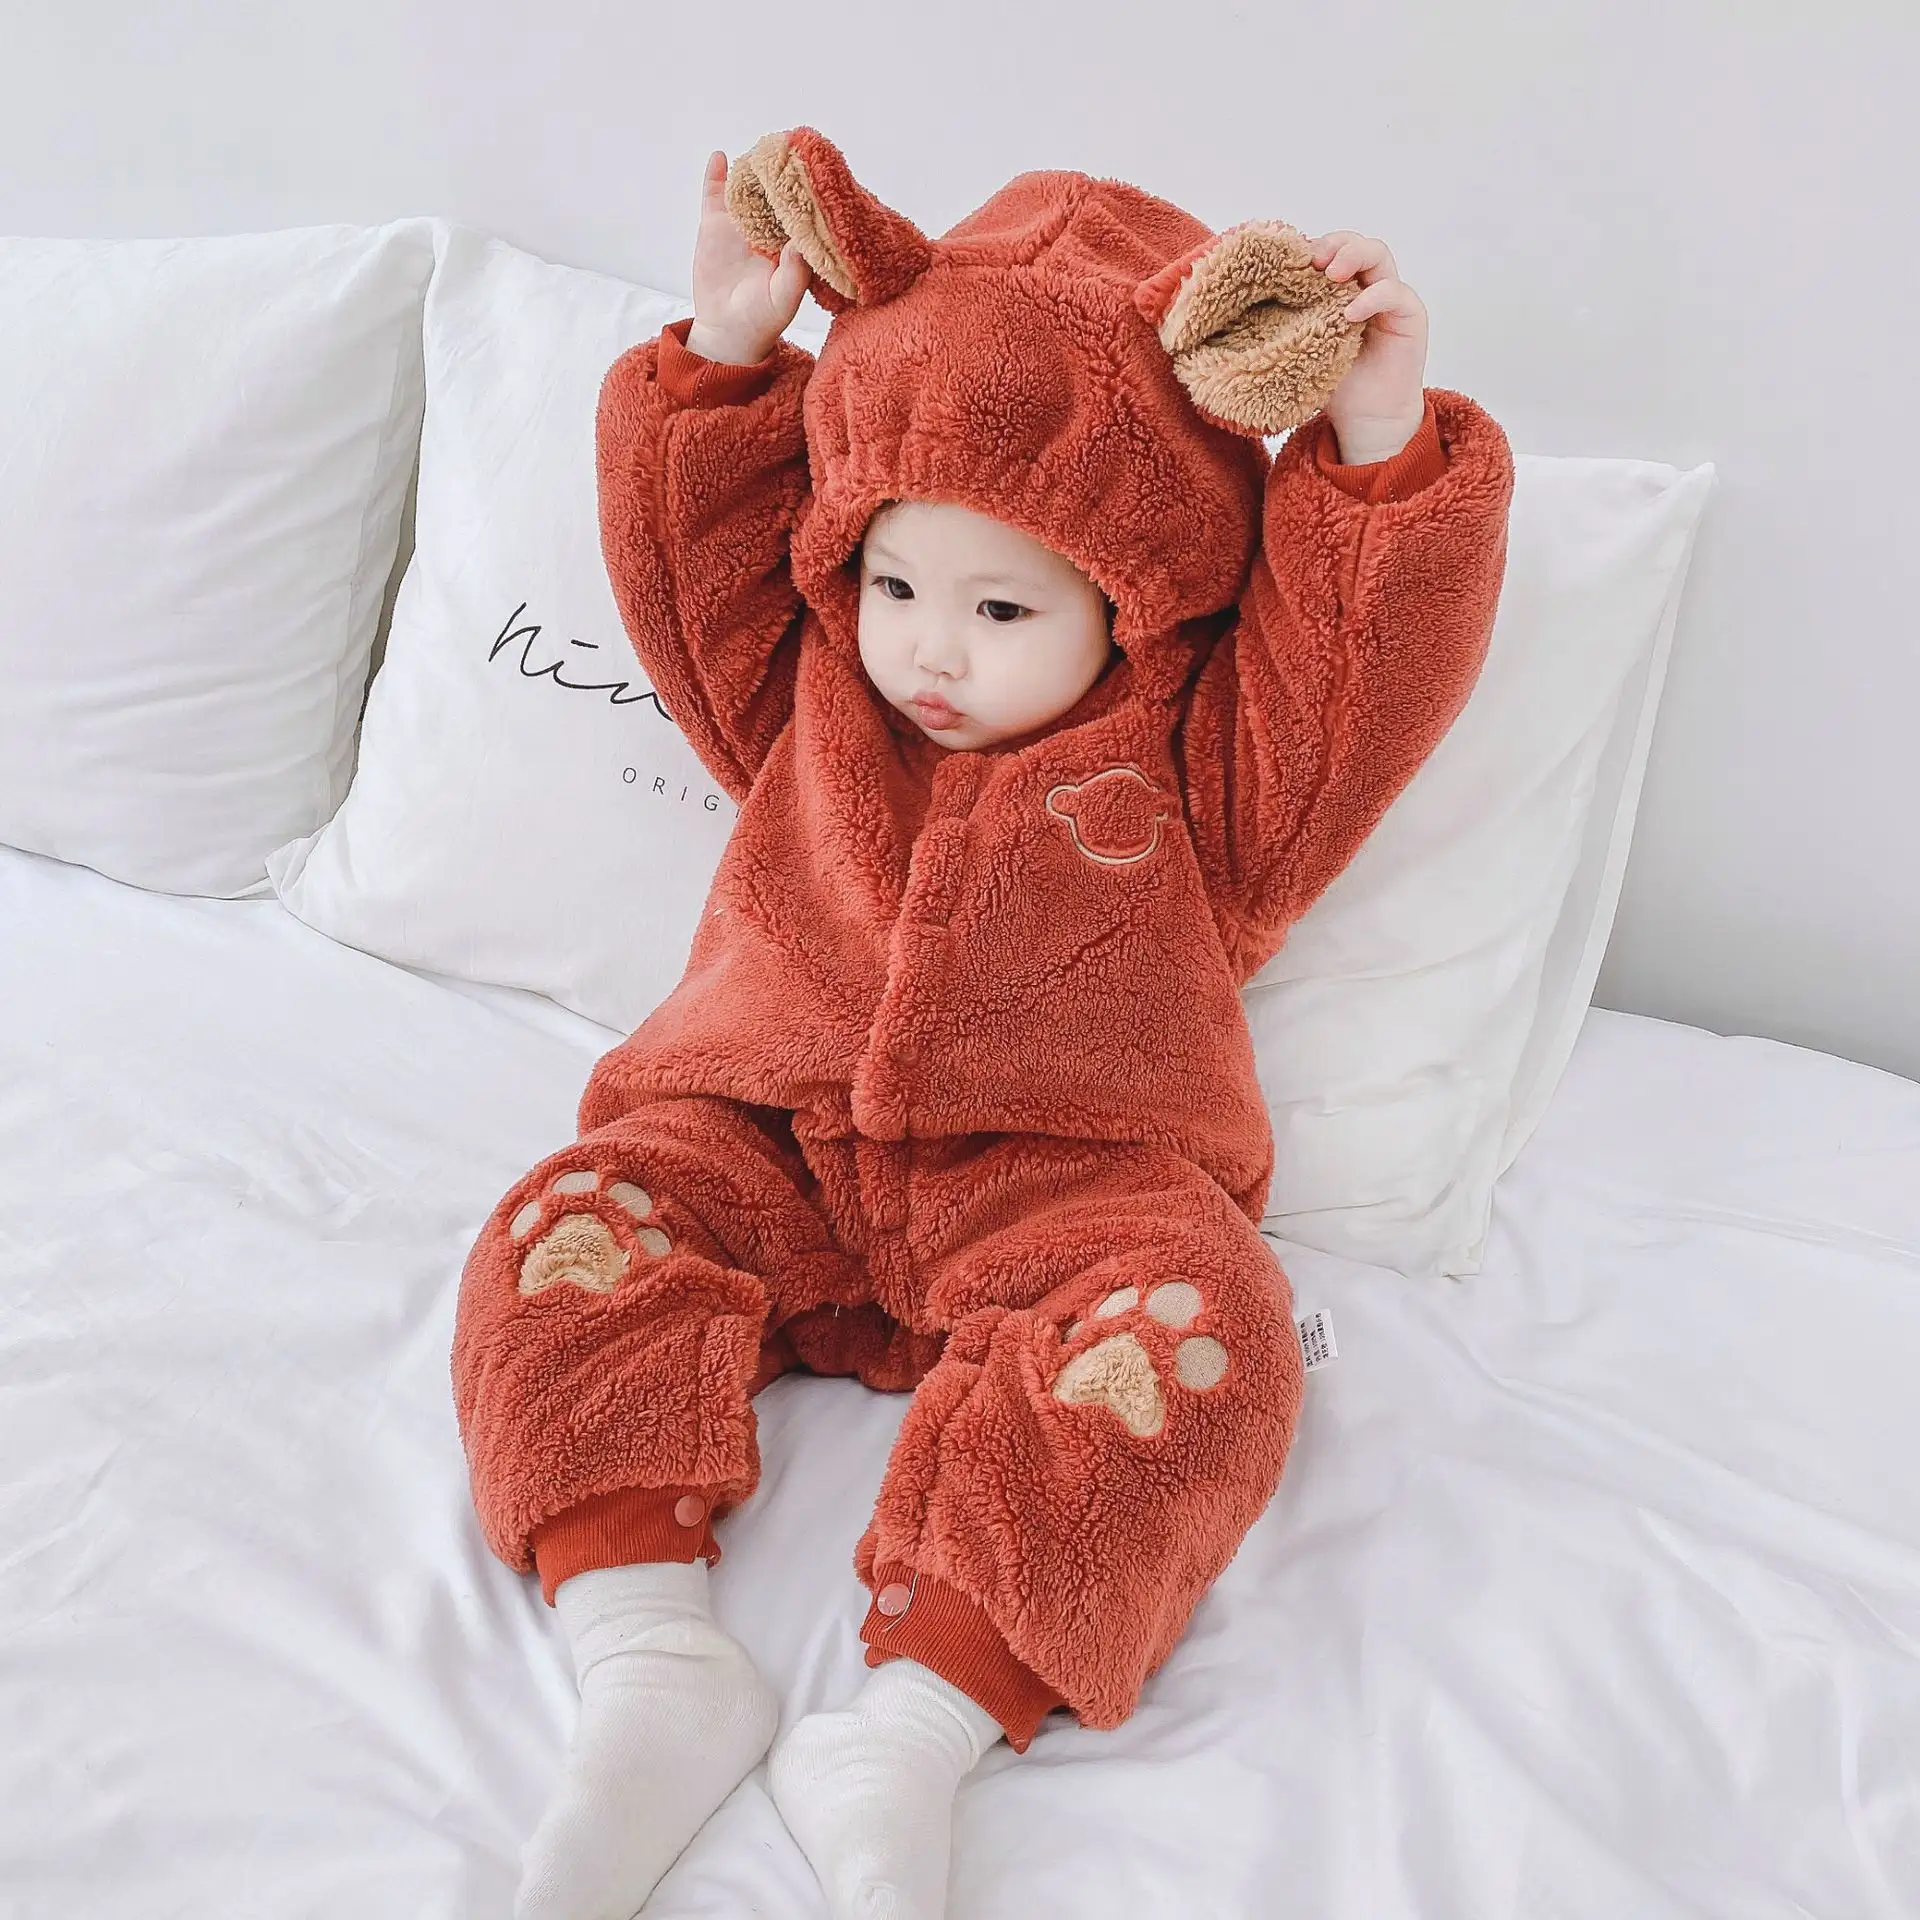 2020 새로운 디자인 아기 동물 아름다운 옷 잠옷 겨울 양털 귀여운 아기 Romper 부드러운 따뜻한 사랑스러운 저렴하고 좋은